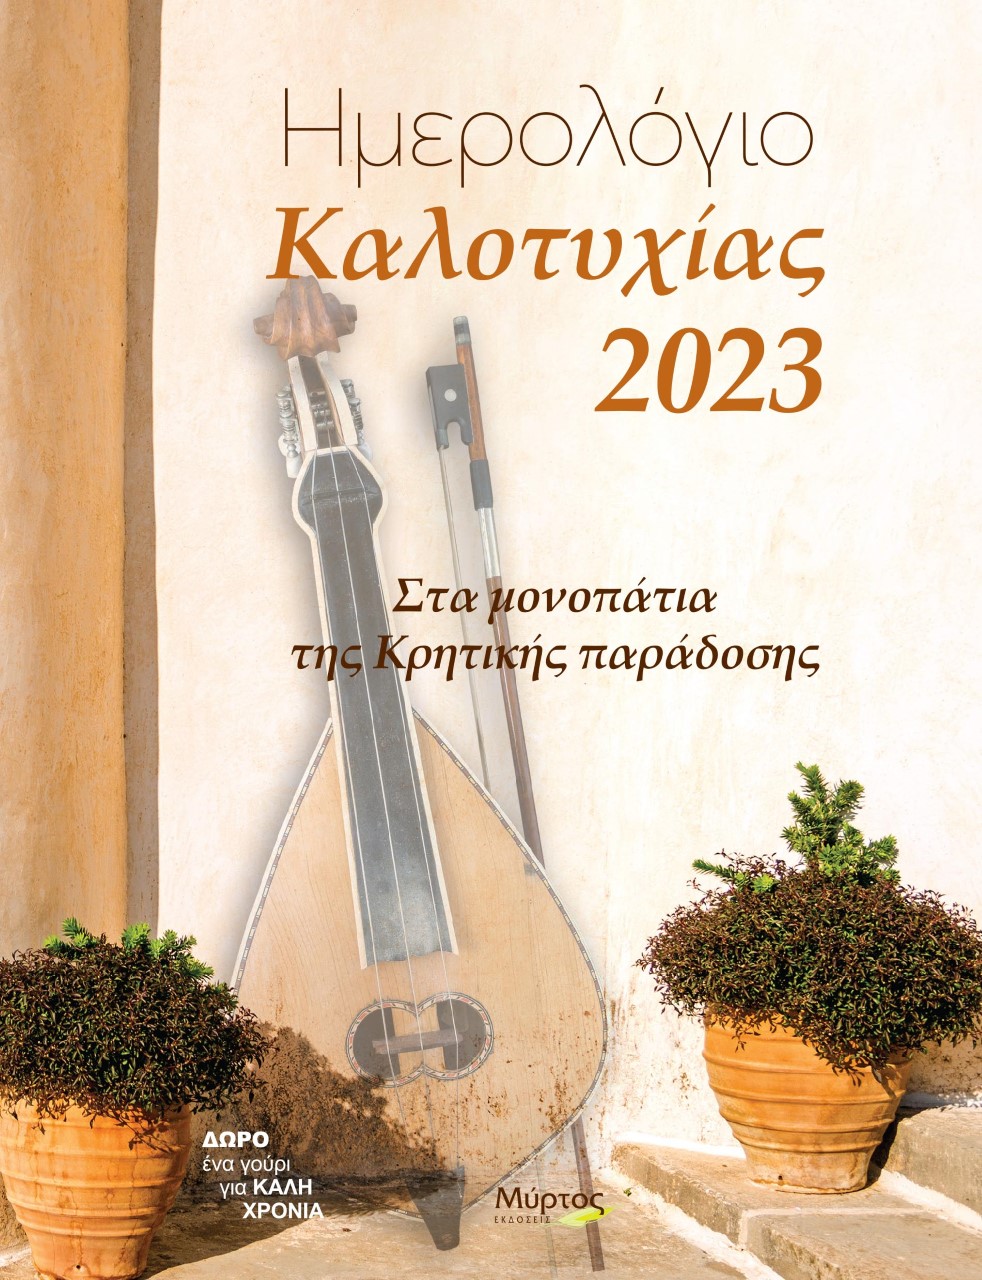 Ημερολόγιο καλοτυχίας 2023: Στα μονοπάτια της κρητικής παράδοσης